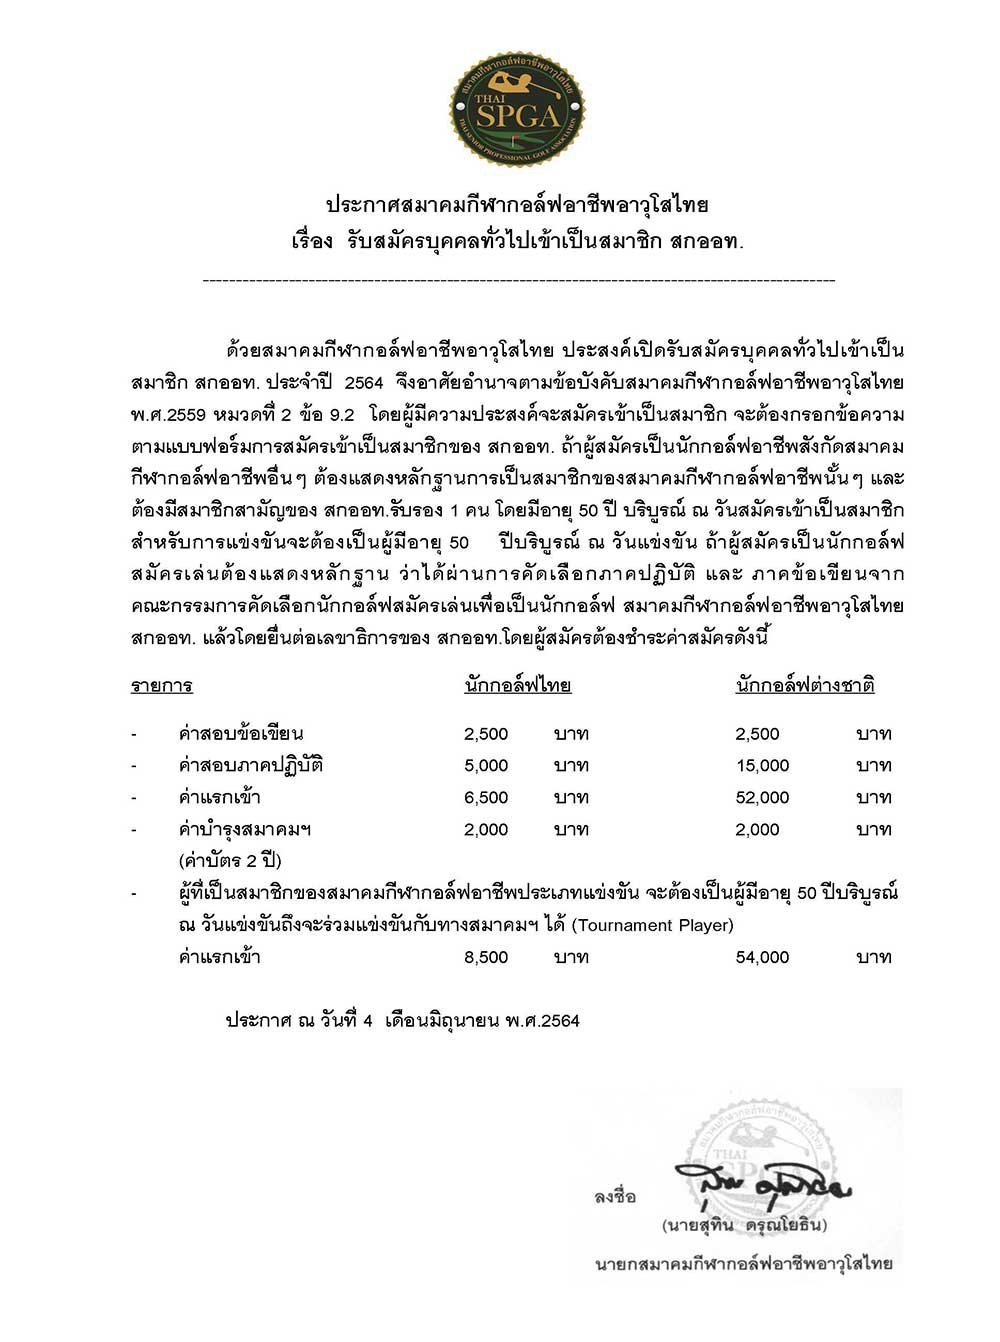 หนงสอสอบเปนภาษาไทย อาทตยา Page 1